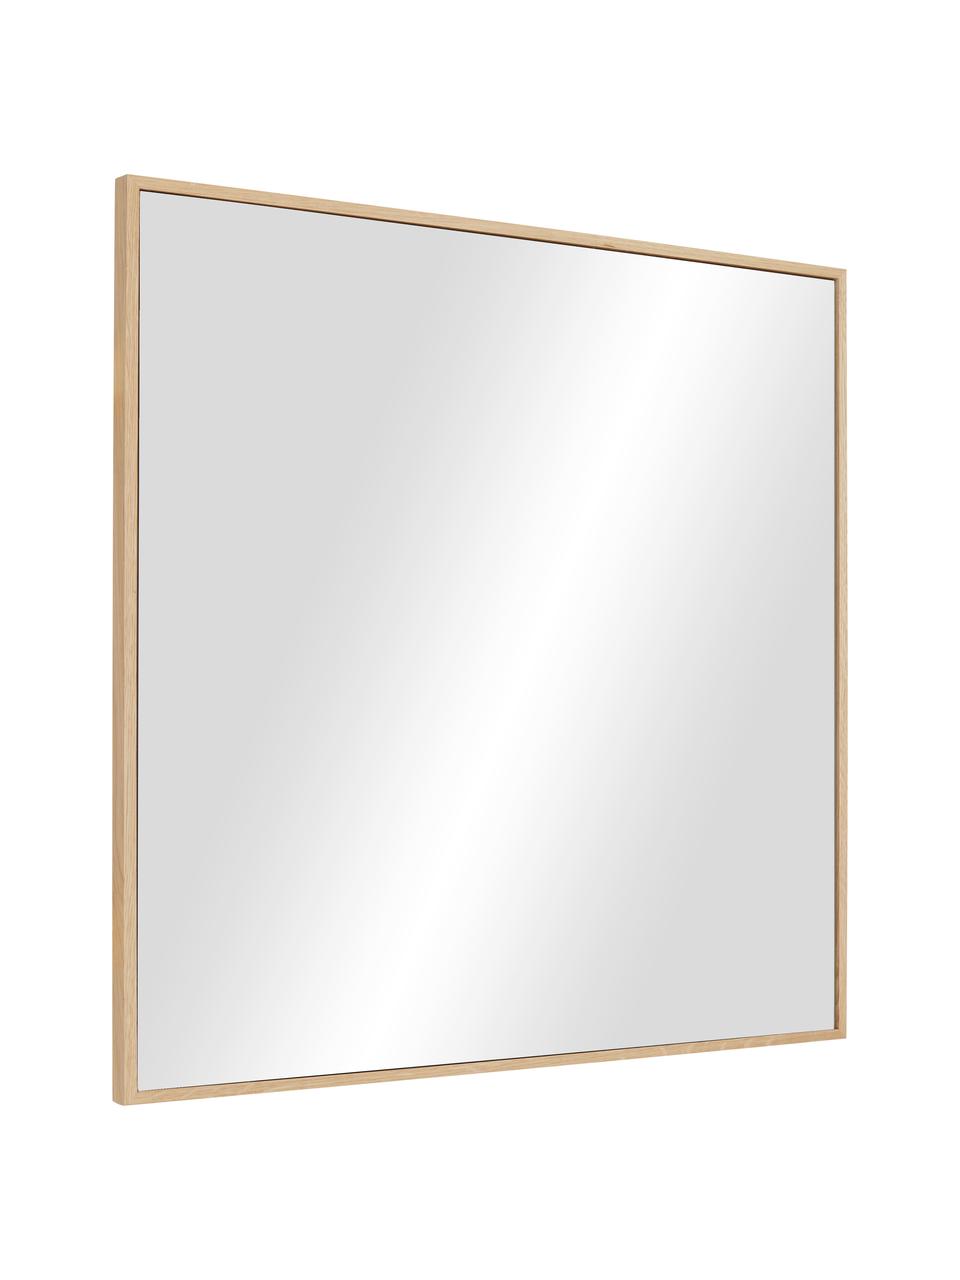 Specchio rettangolare da parete con cornice in legno di quercia marrone Avery, Cornice: legno di quercia certific, Superficie dello specchio: lastra di vetro, Legno chiaro, Larg. 55 x Alt. 55 cm